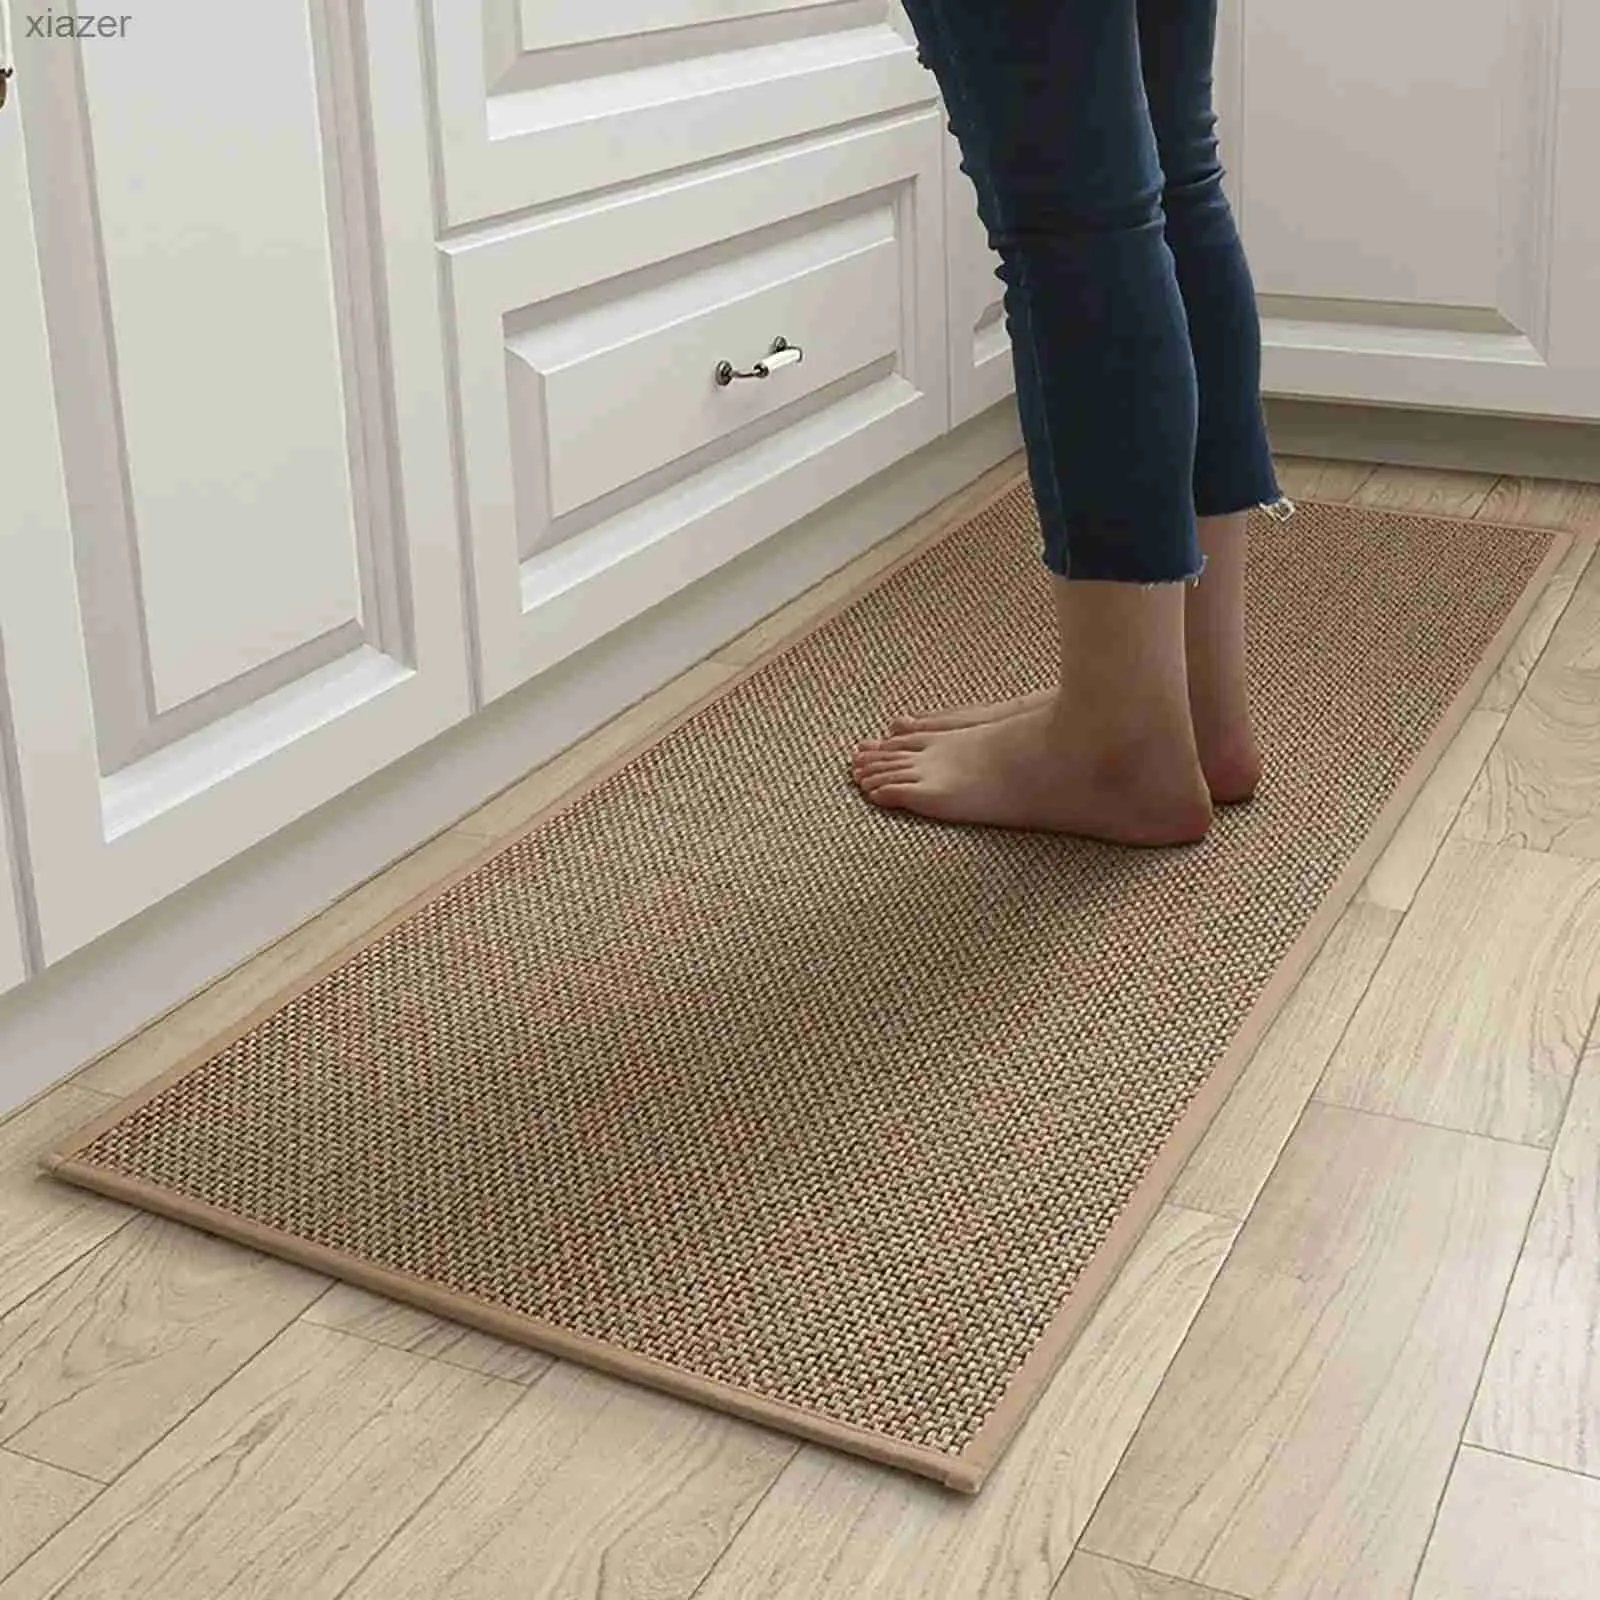 Le linge de tapis comme des tapis de cuisine peut être utilisé pour les tapis de cuisine et les semelles en caoutchouc de chambre pour éviter le glissement WX